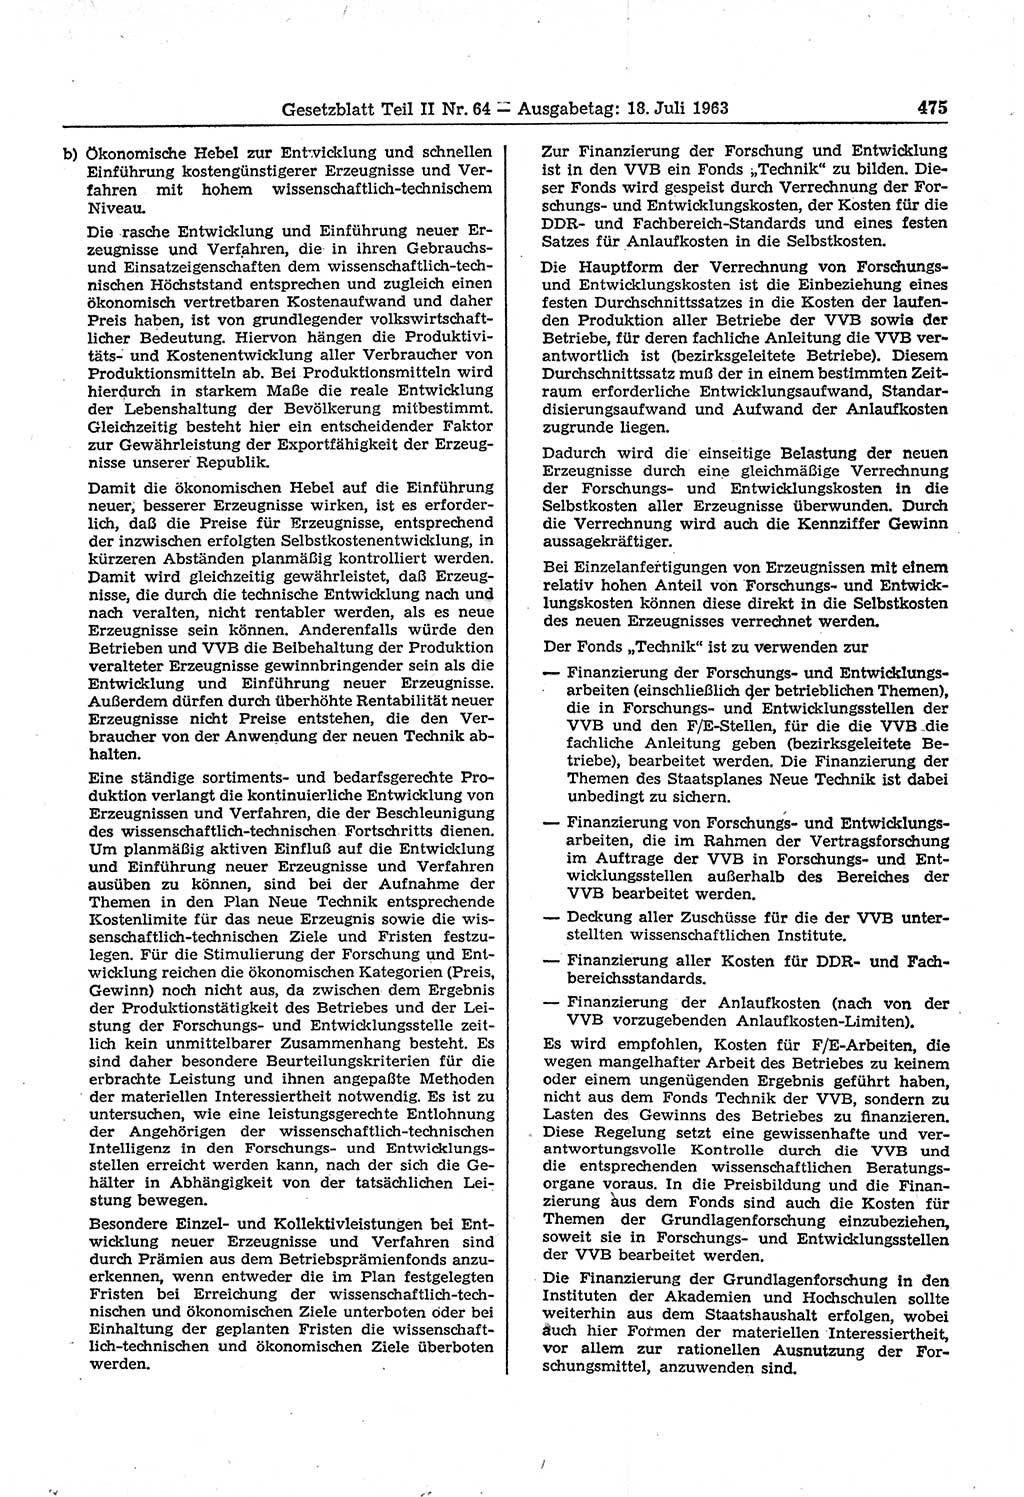 Gesetzblatt (GBl.) der Deutschen Demokratischen Republik (DDR) Teil ⅠⅠ 1963, Seite 475 (GBl. DDR ⅠⅠ 1963, S. 475)